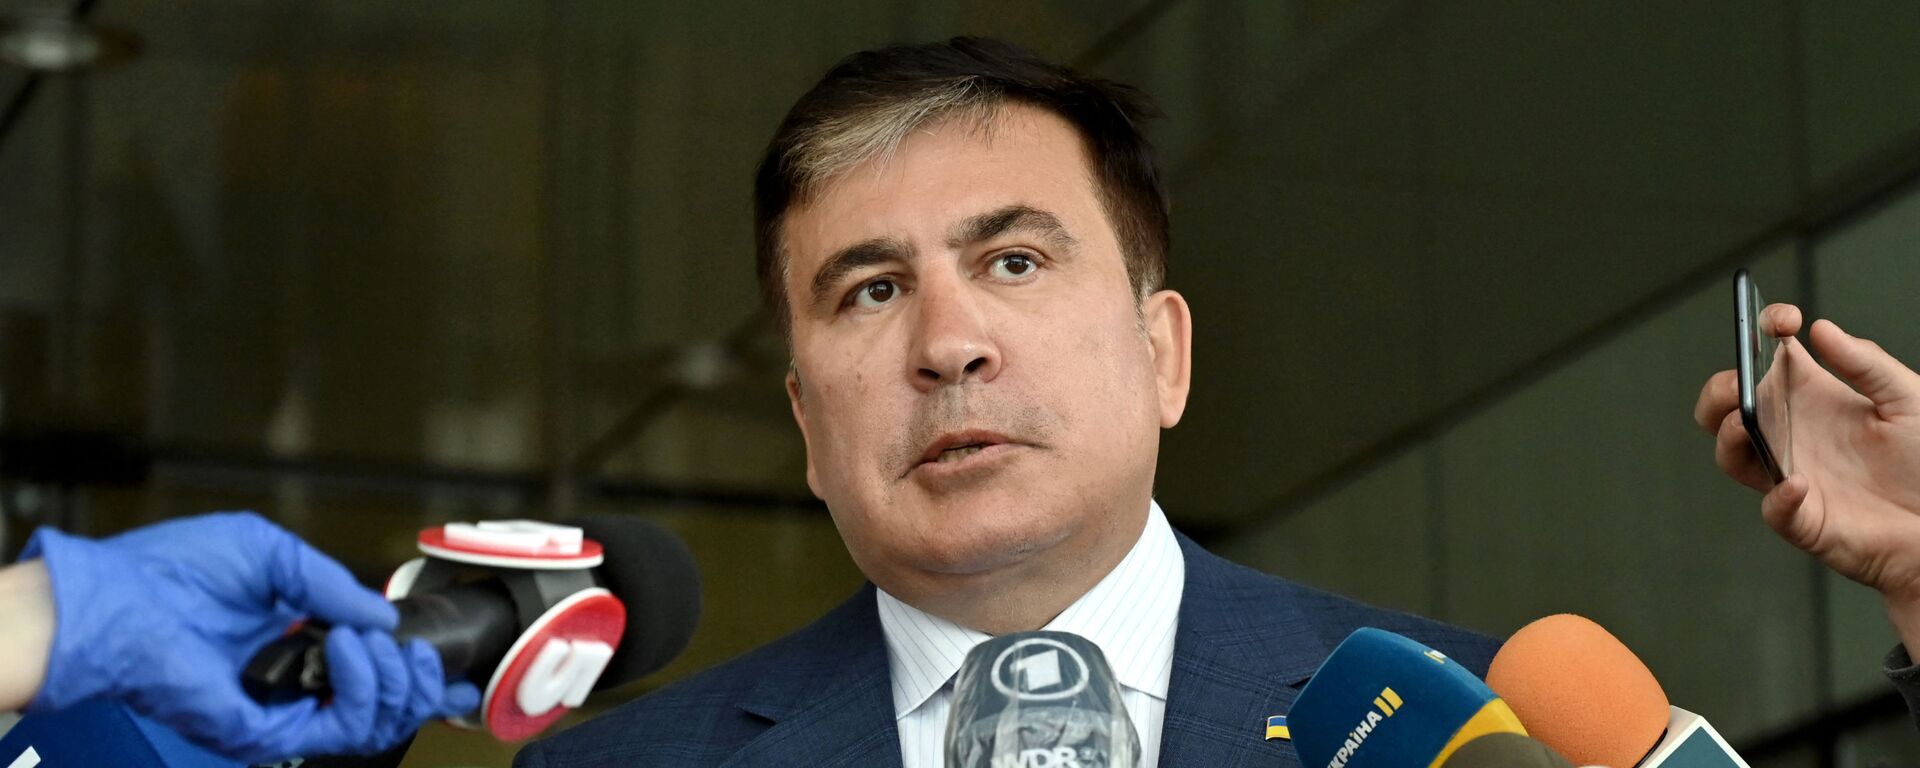 Михаил Саакашвили, архивное фото - Sputnik Грузия, 1920, 29.10.2021